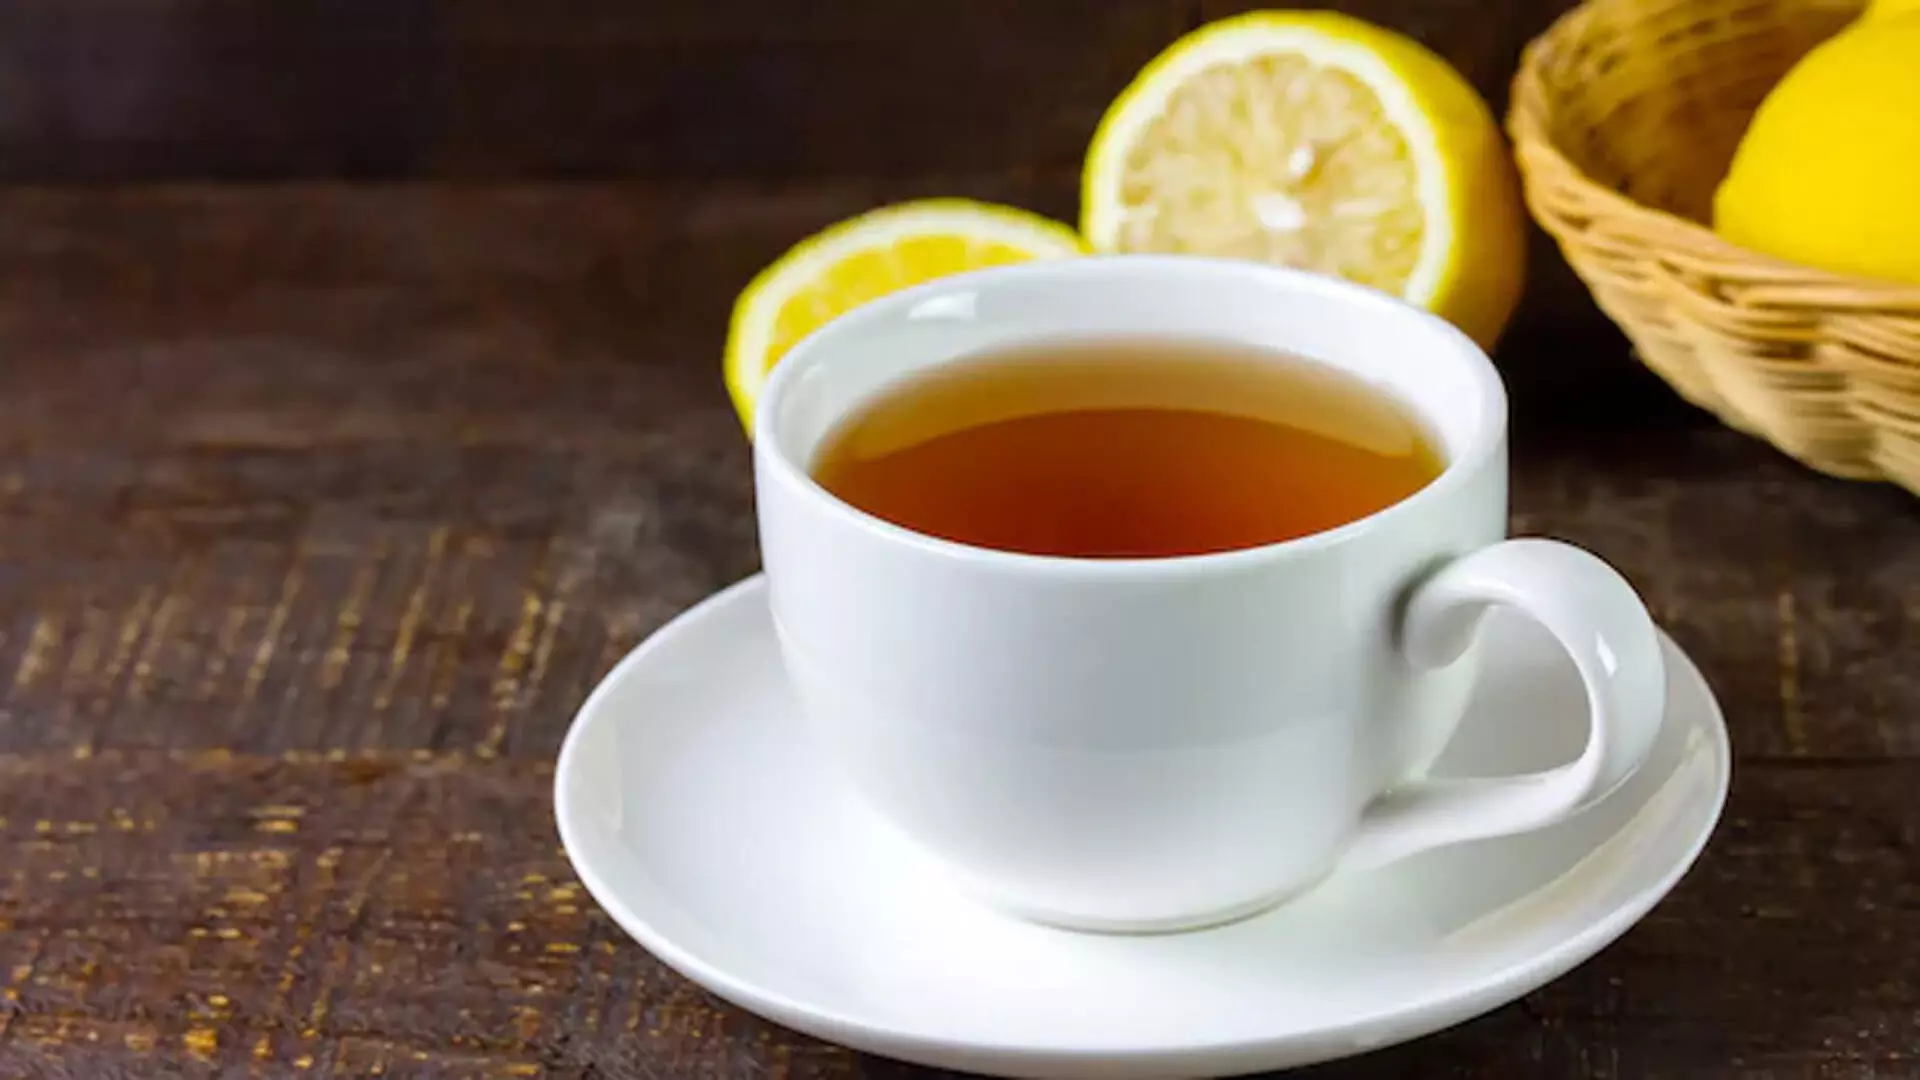 नियमित चाय से परे, दुनिया के पसंदीदा पेय के बहुमुखी स्वादों का अन्वेषण करें